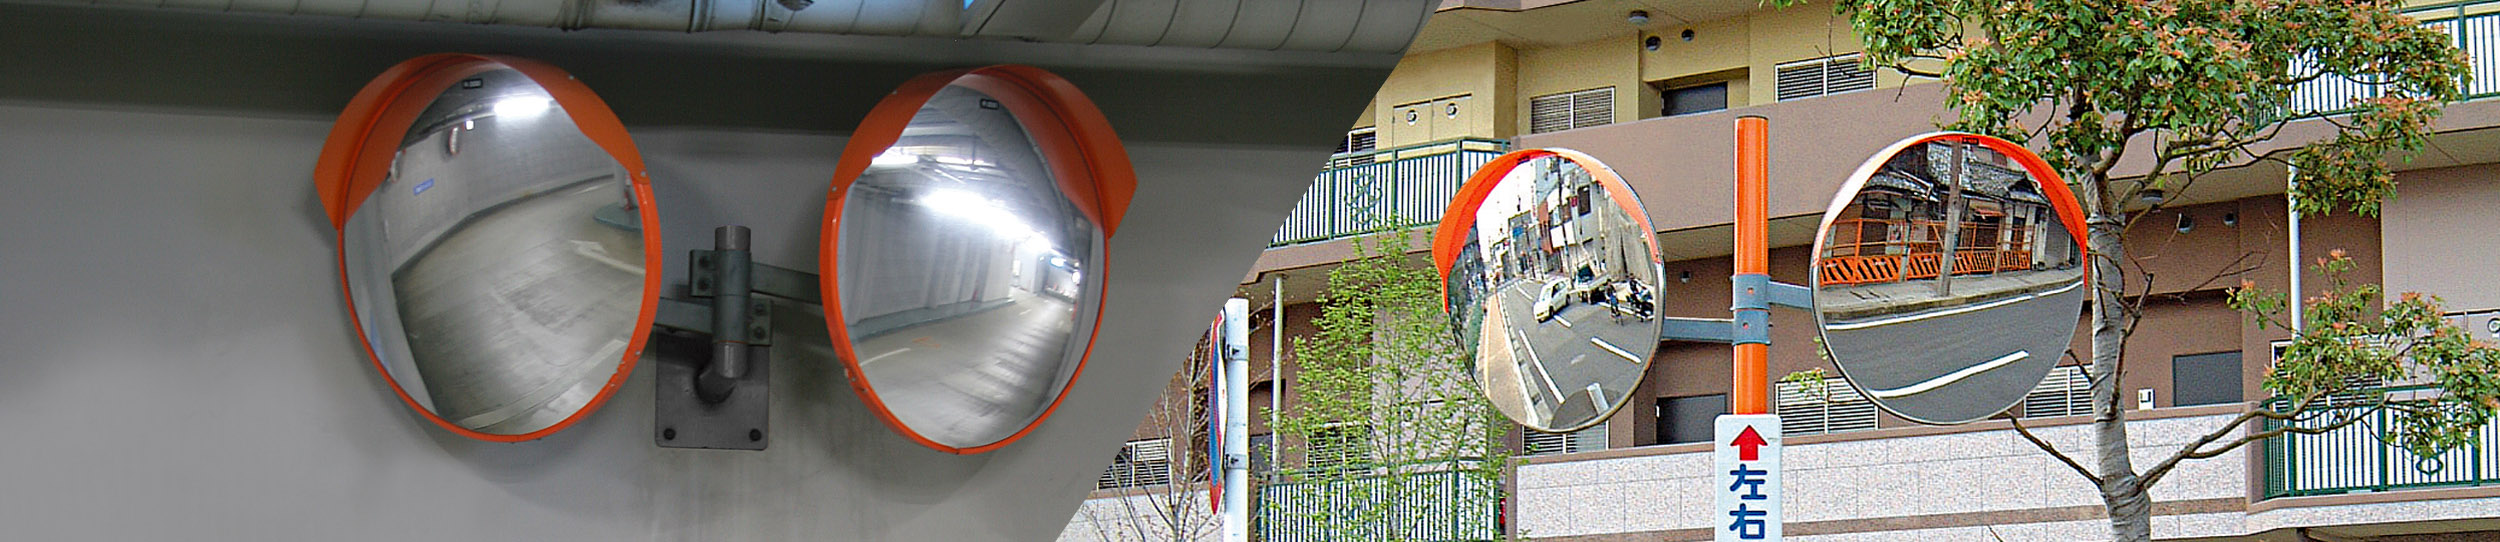 壁付けタイプの道路反射鏡カーブミラーとコン中タイプの道路反射鏡カーブミラー